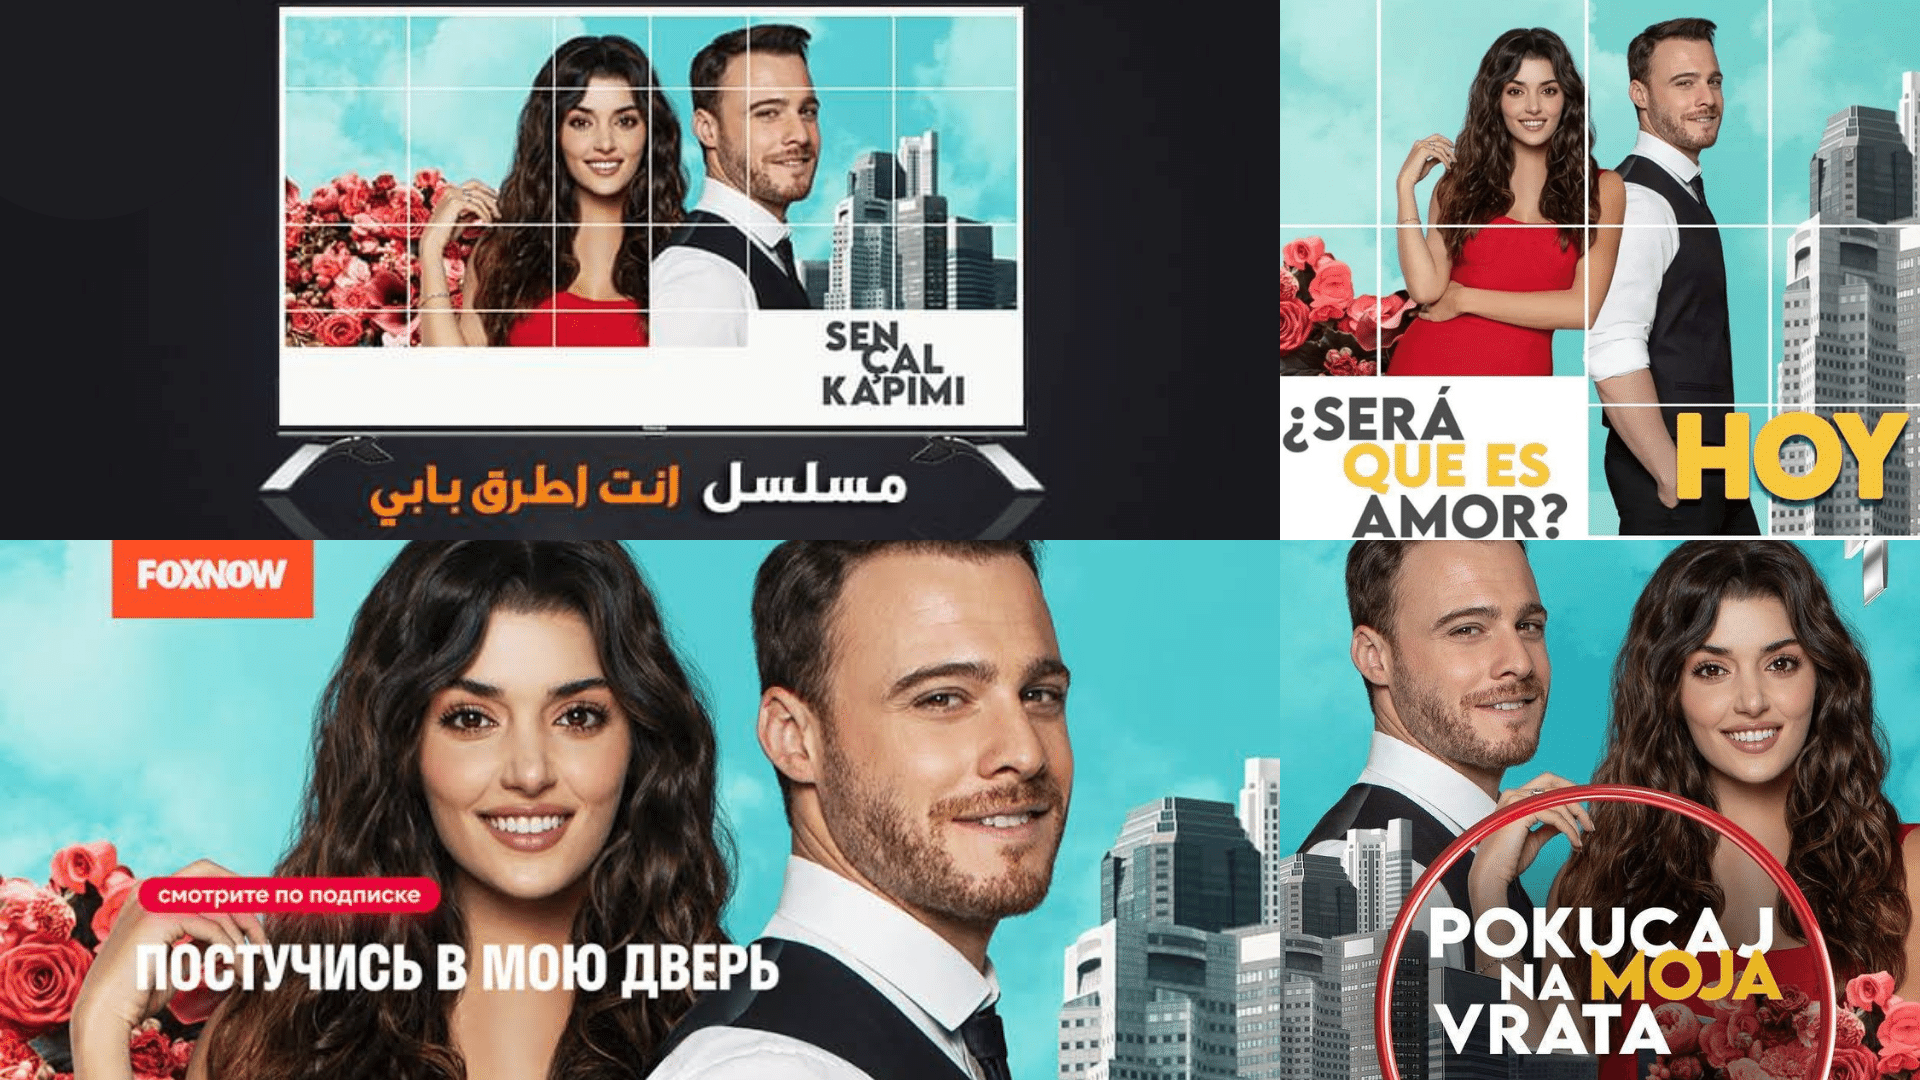 Colagem de promocionais da série Sen Çal Kapimi em 4 países distintos.